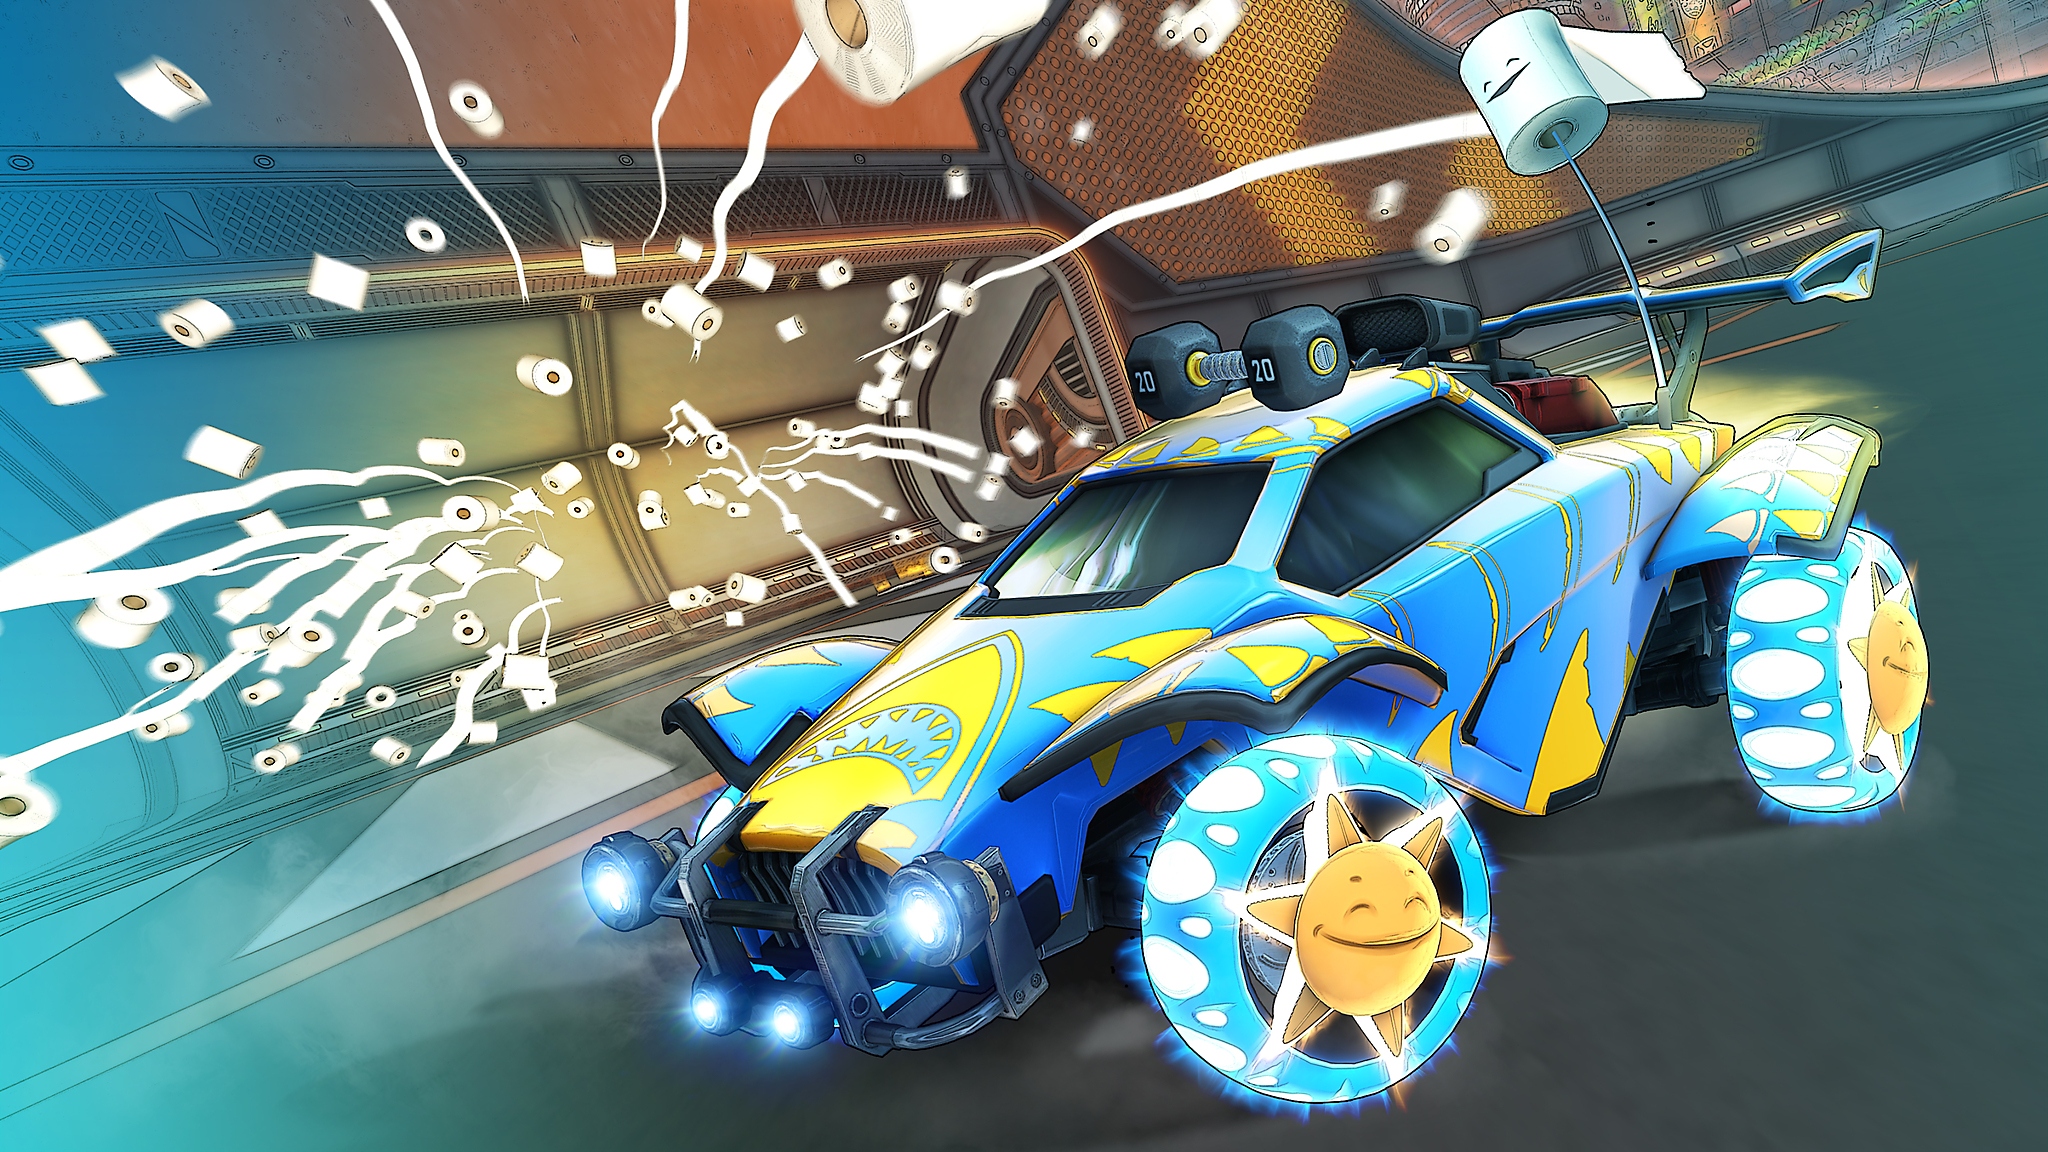 Rocket League - Istantanea della schermata della stagione 6 che mostra un'auto blu e gialla e dei rotoli di carta igienica lanciati in aria